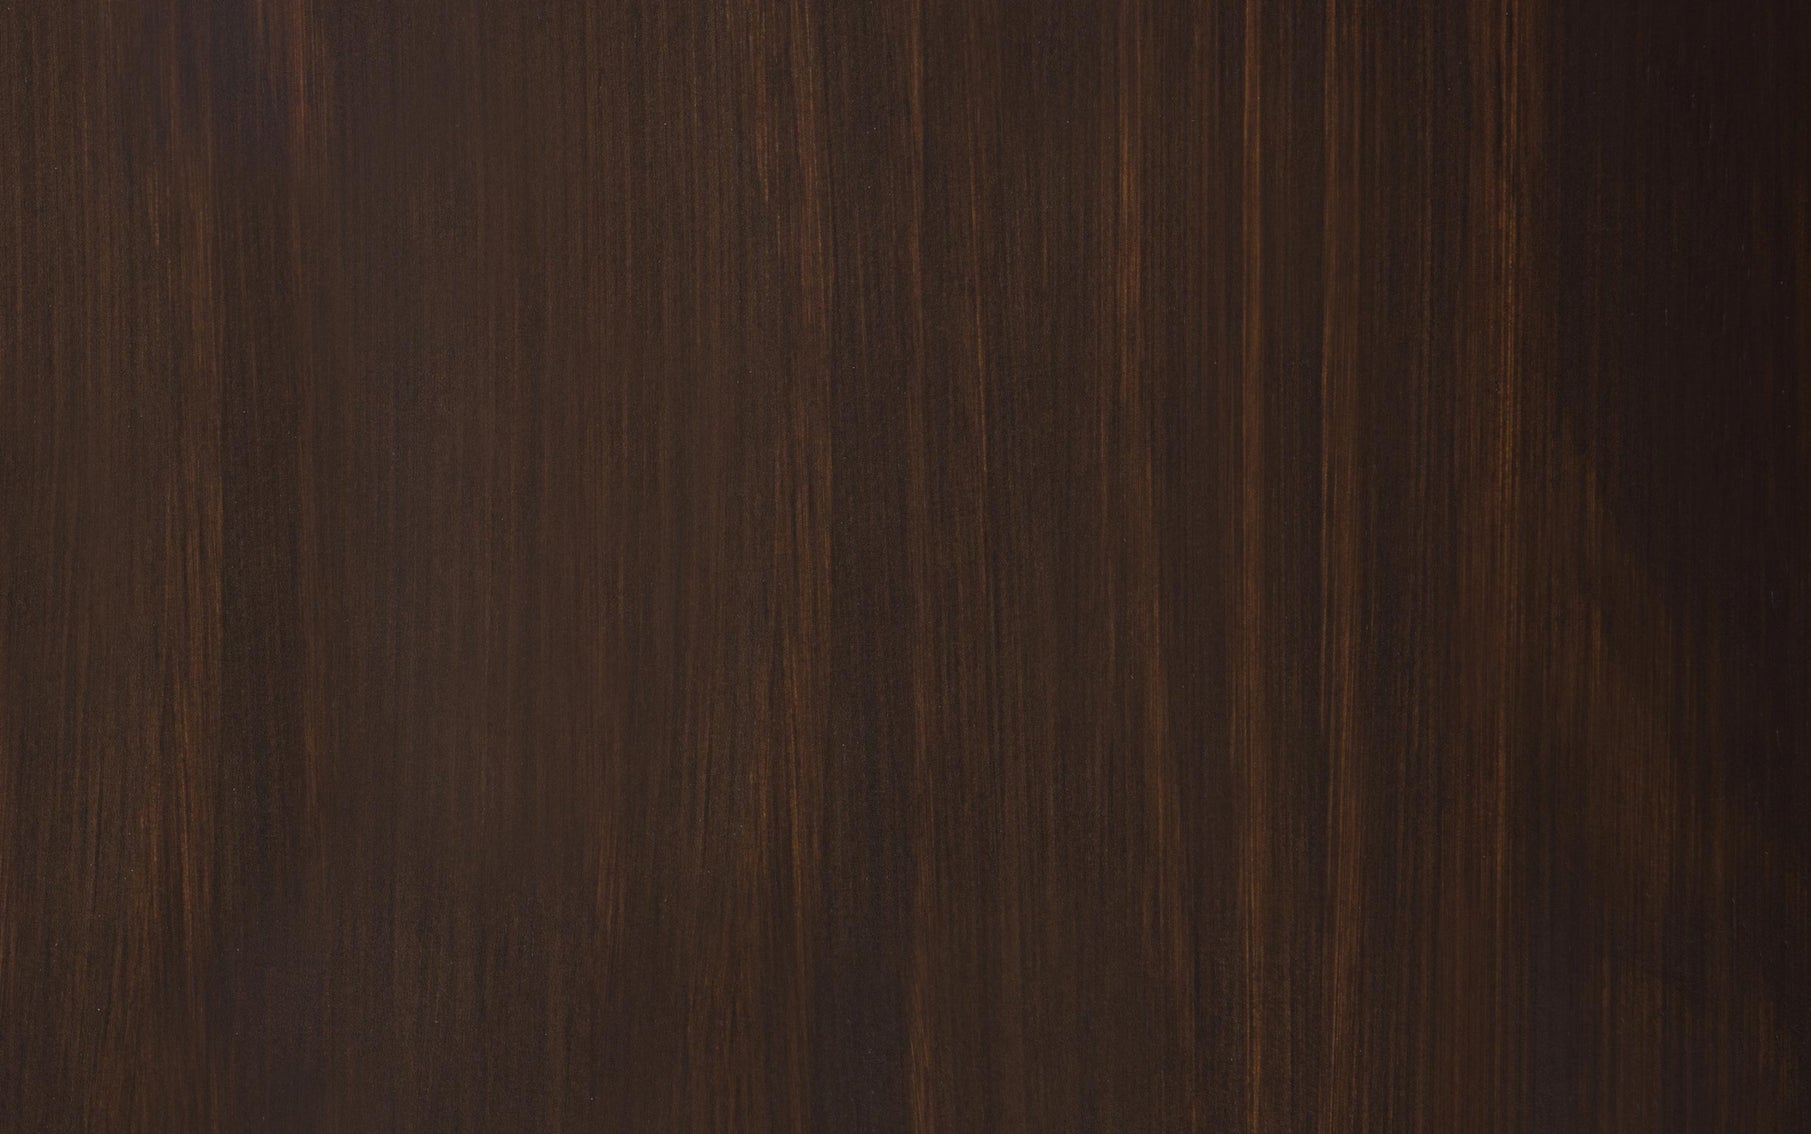 Dark Chestnut Brown | Connaught Entryway Storage Cabinet